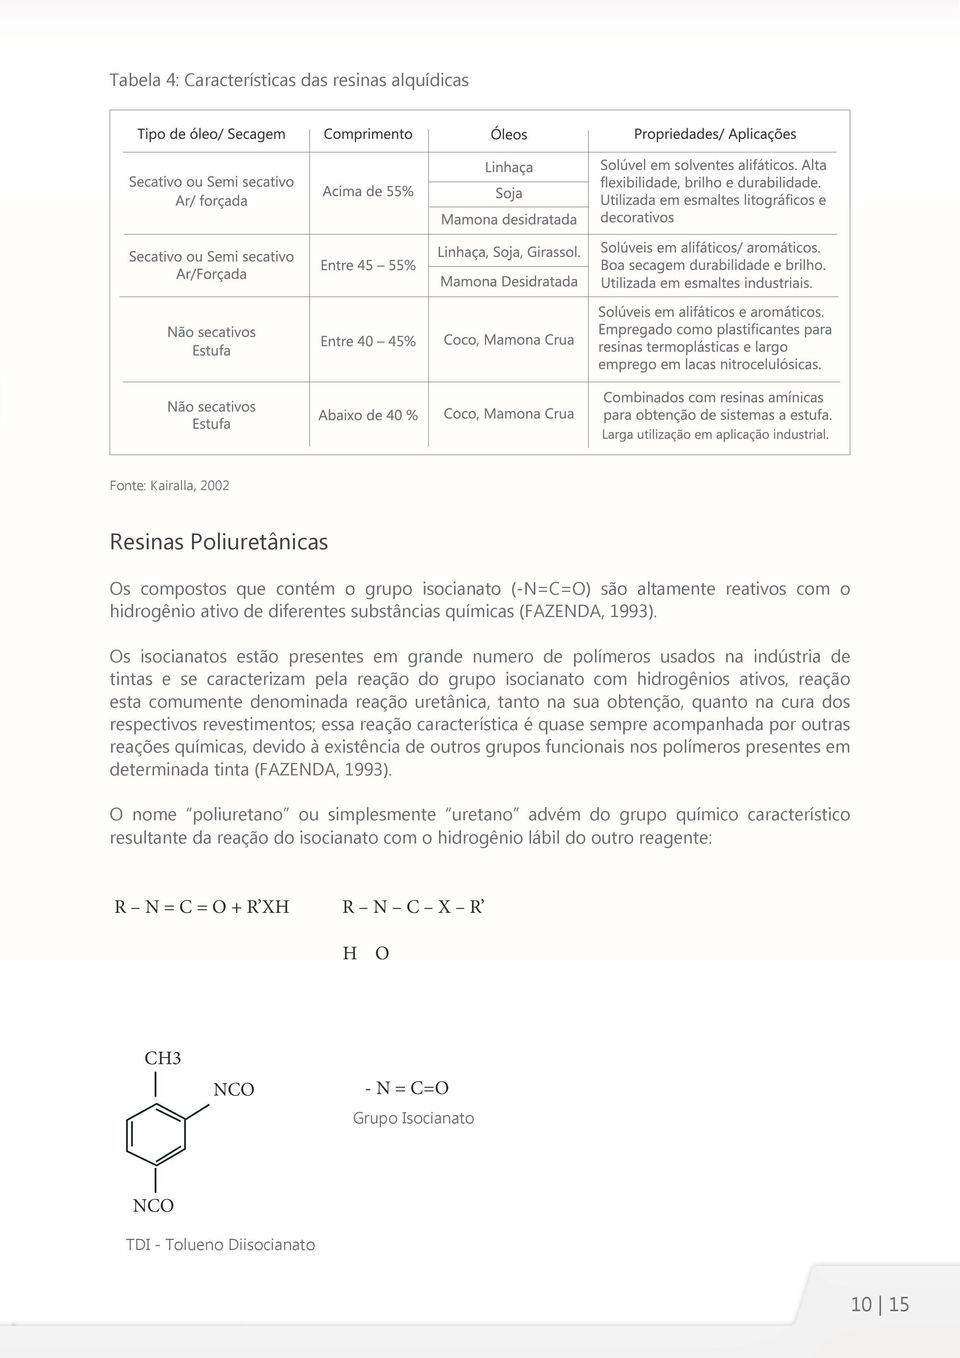 s isocianatos estão presentes em grande numero de polímeros usados na indústria de tintas e se caracterizam pela reação do grupo isocianato com hidrogênios ativos, reação esta comumente denominada